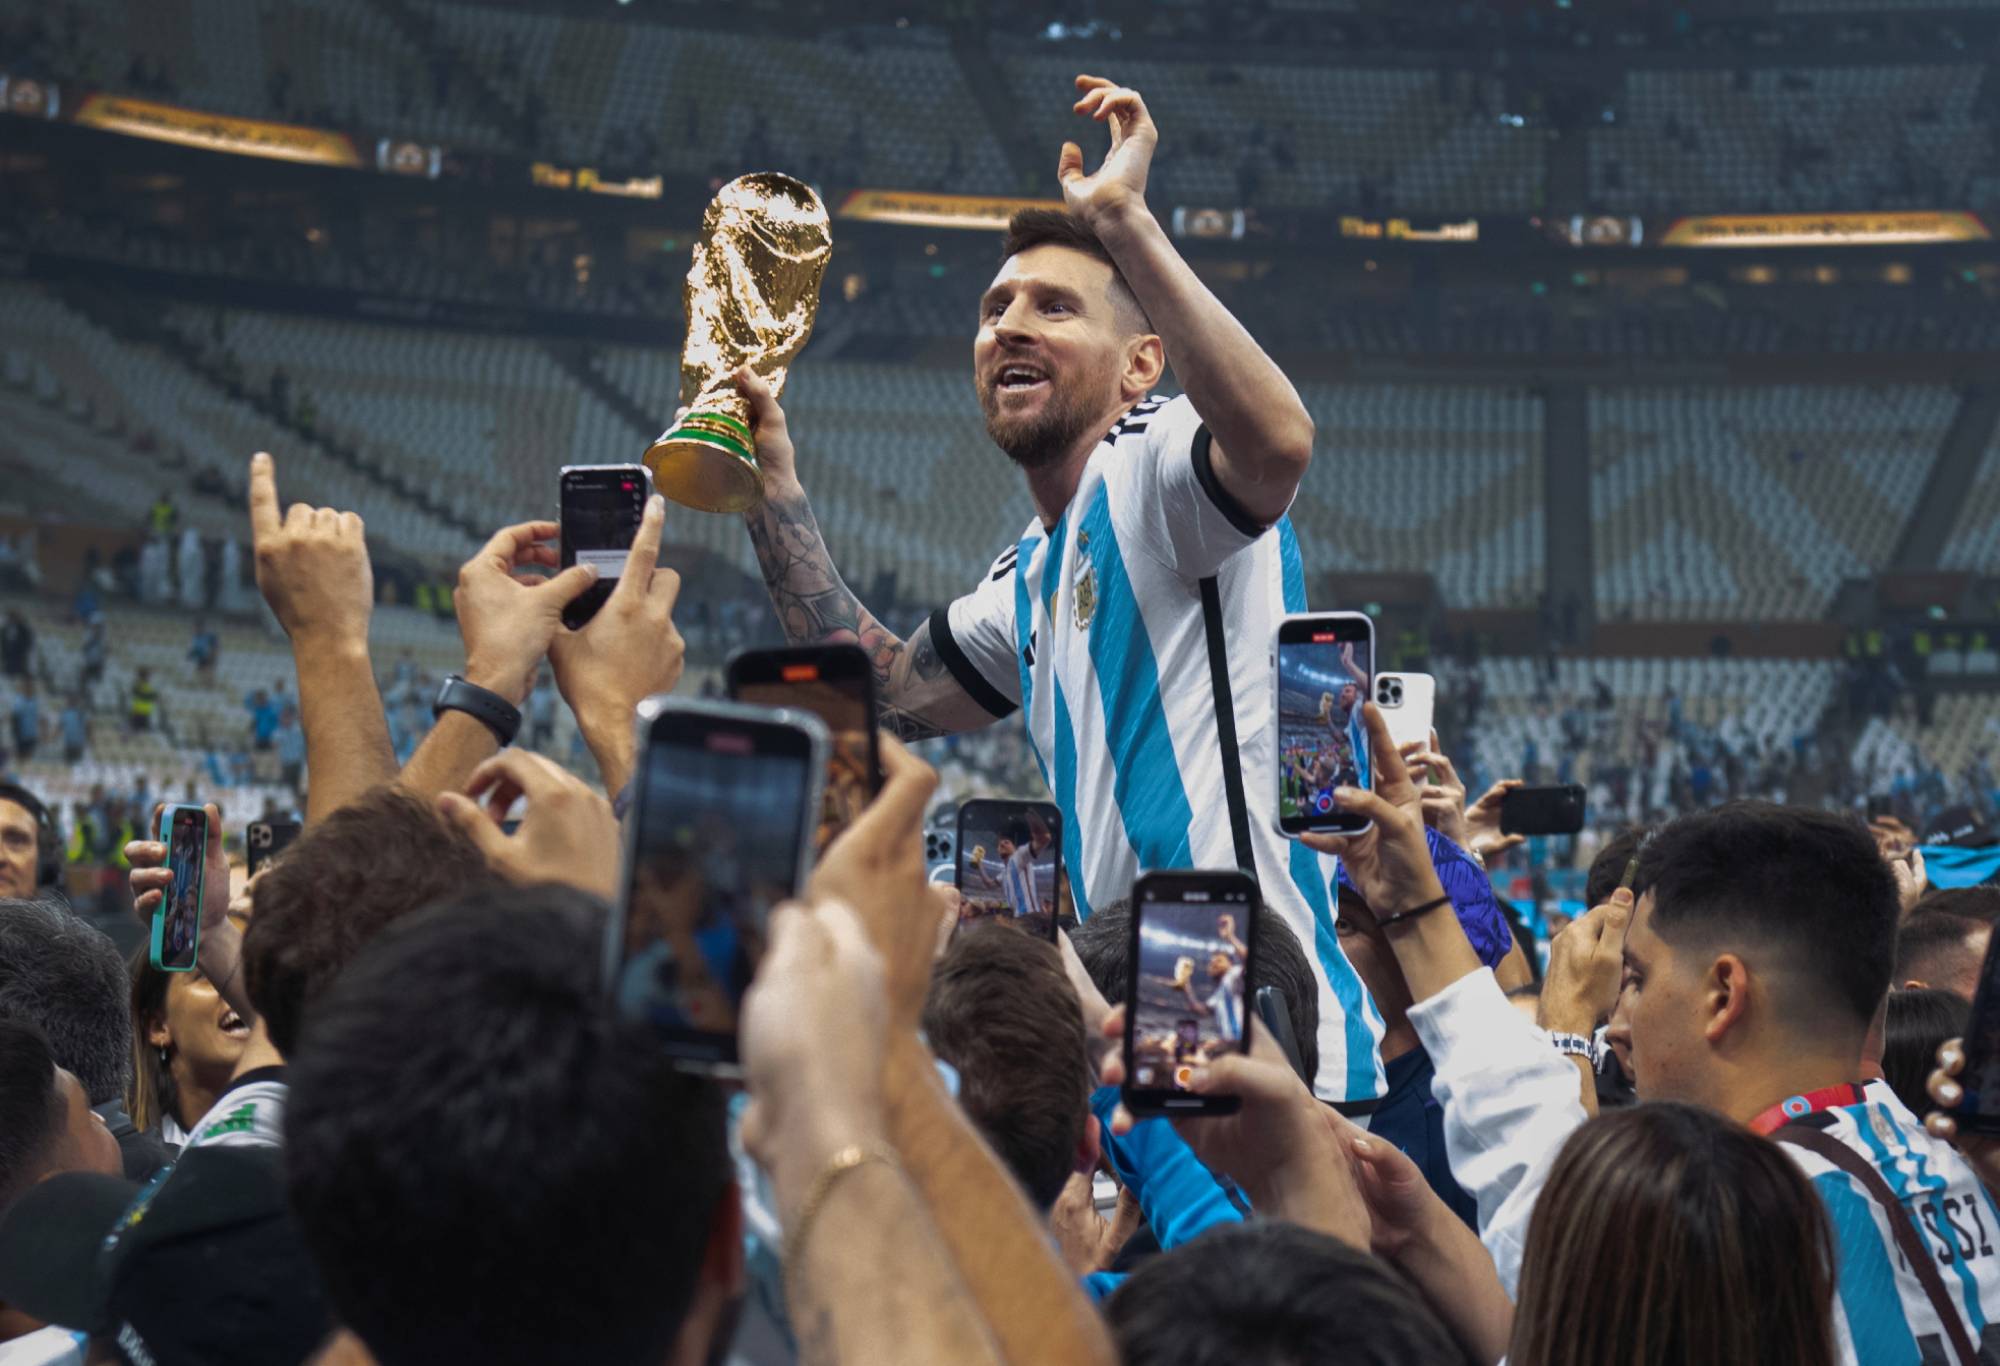 Hanya satu hal yang hilang saat Messi bergabung dengan Maradona sebagai pemain abadi sepakbola